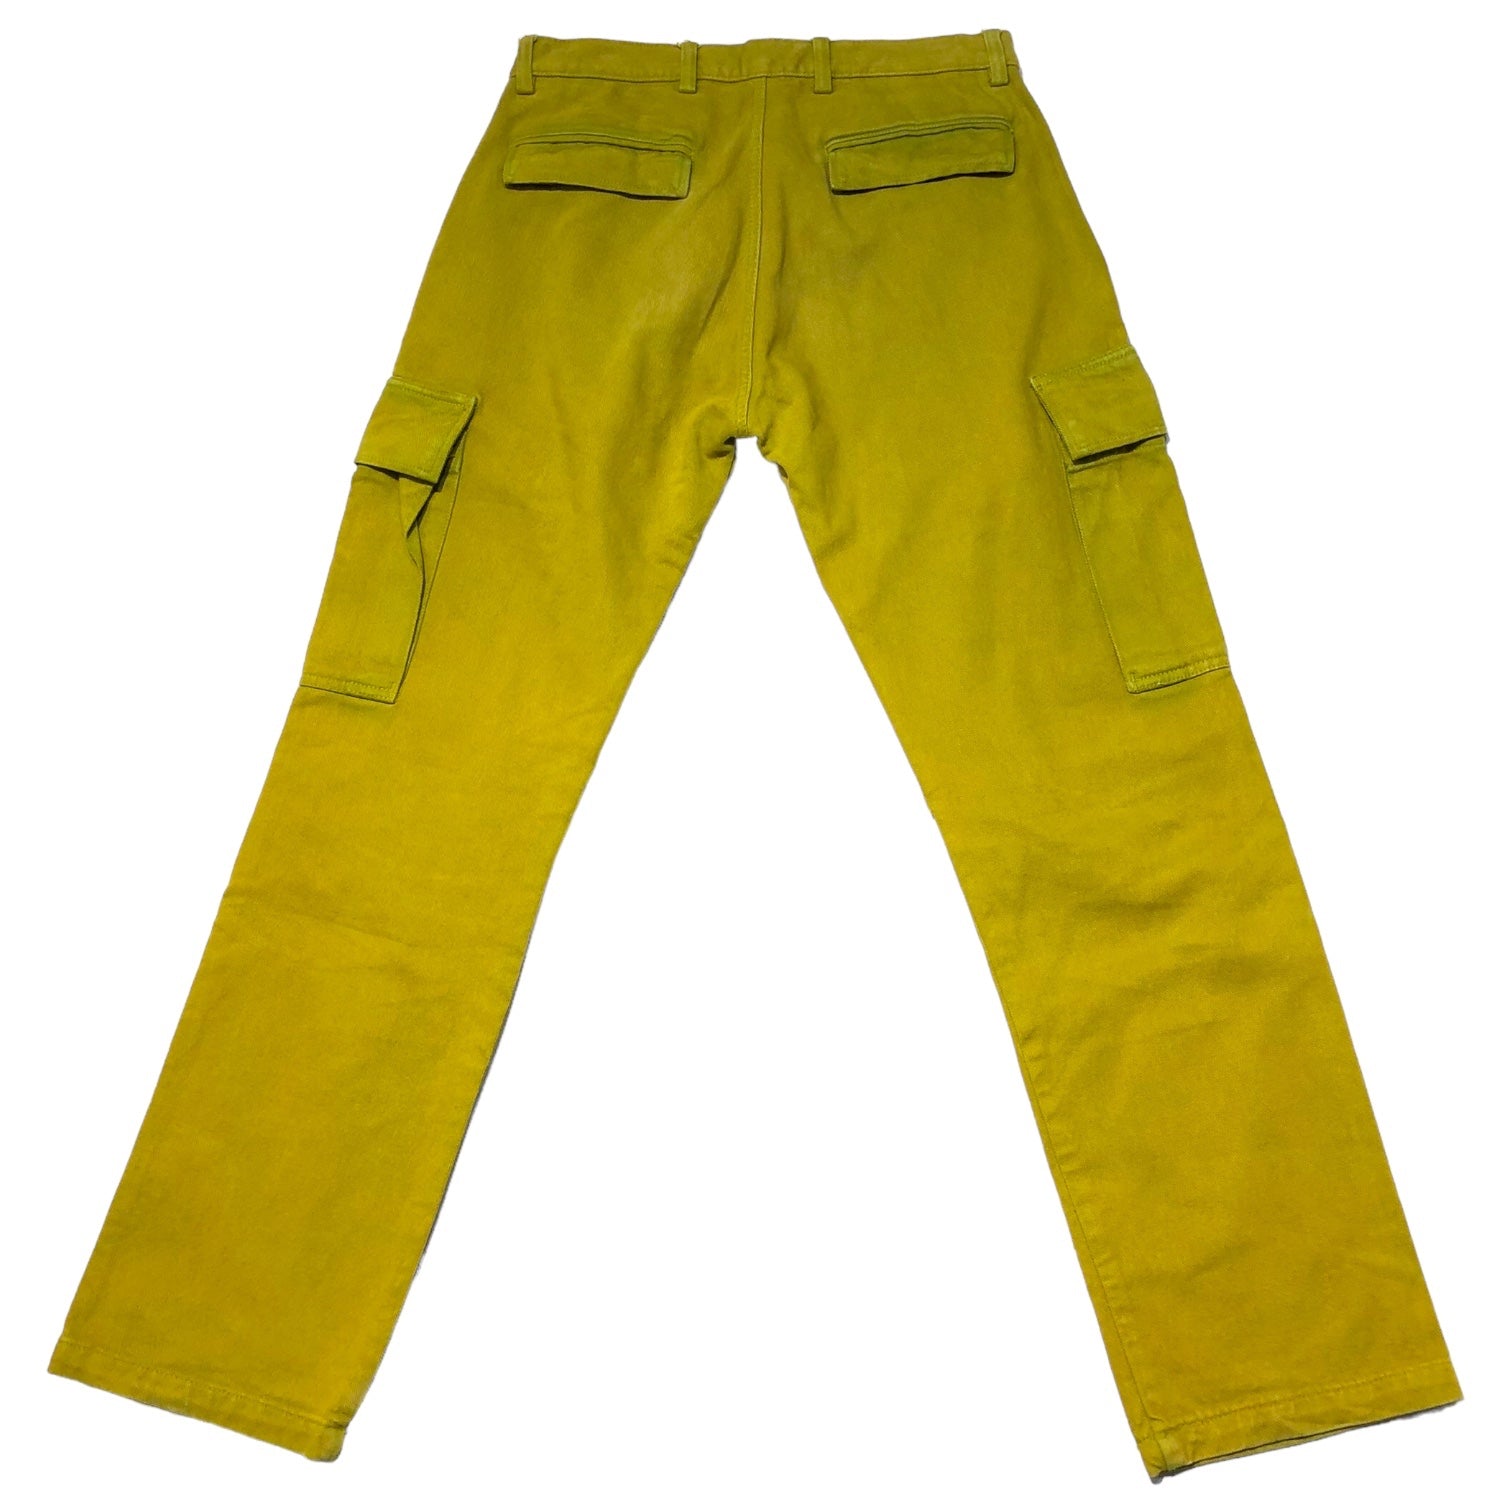 LOWRIDER(ローライダー) cargo denim pants カーゴ デニム パンツ W30 イエロー UK イギリス製 ジーンズ